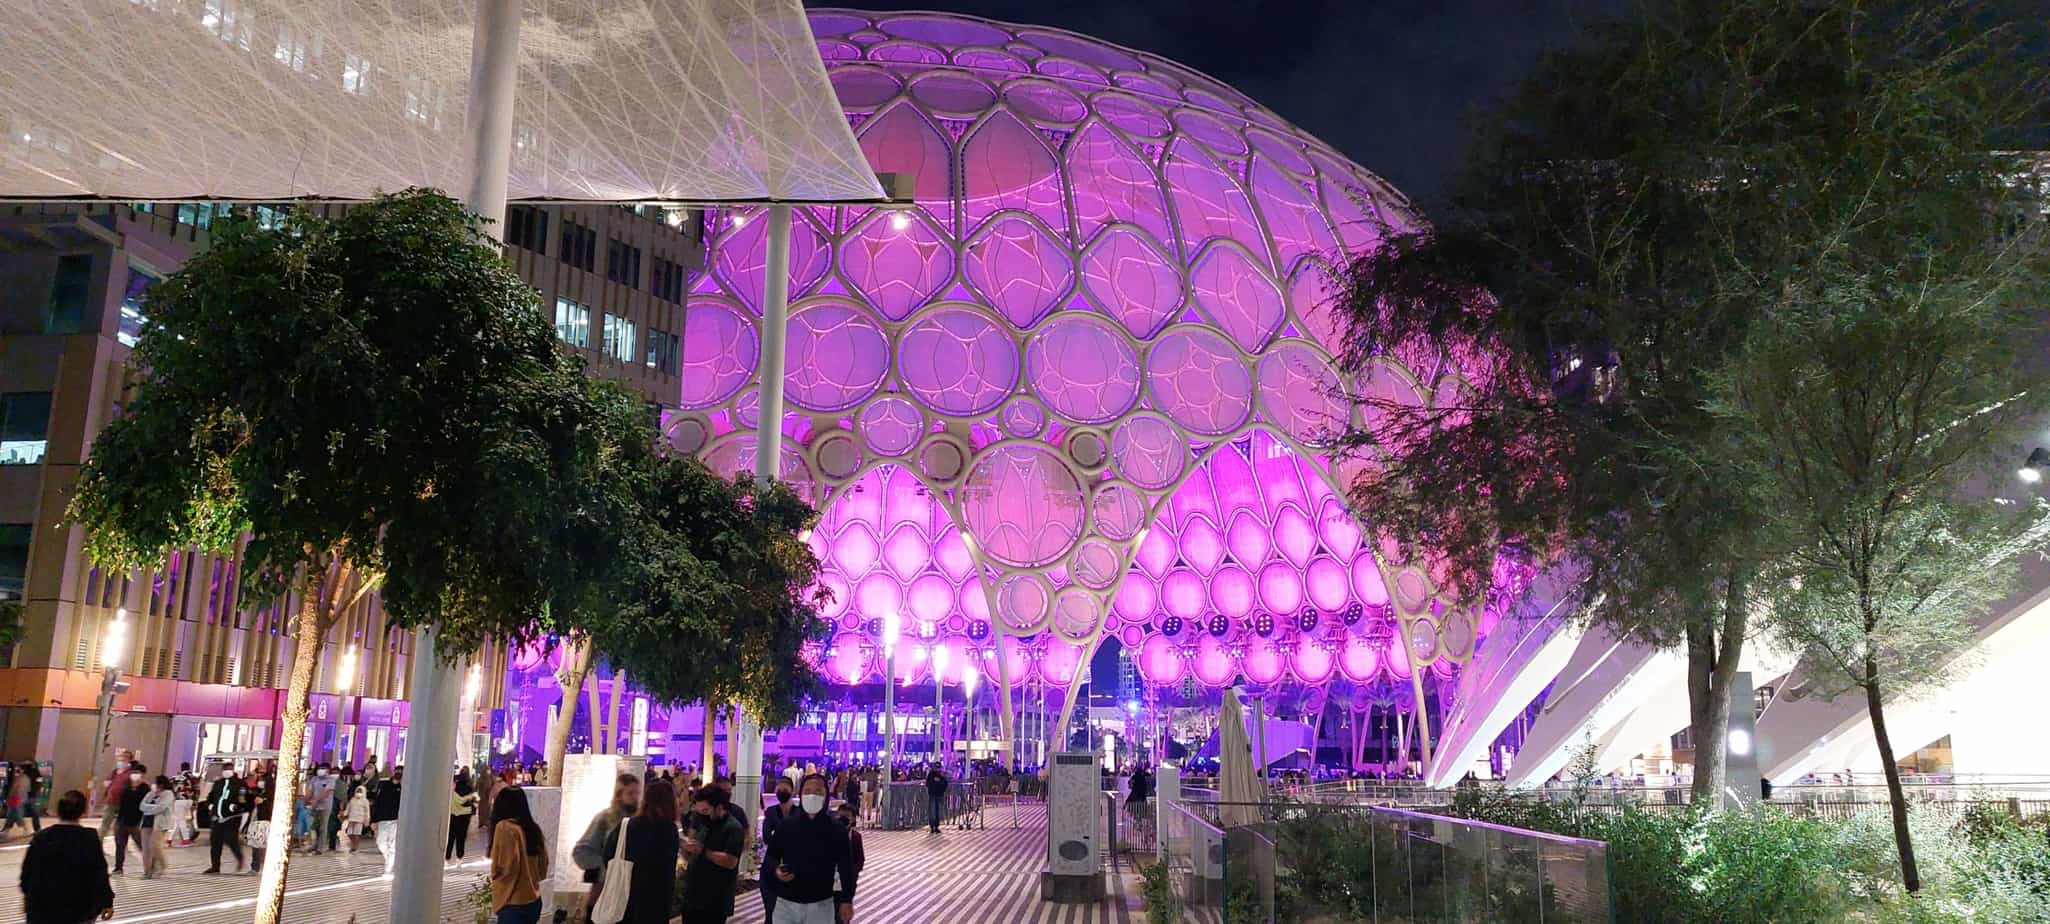 Bezoek Expo 2020 Dubai tijdens een citytrip